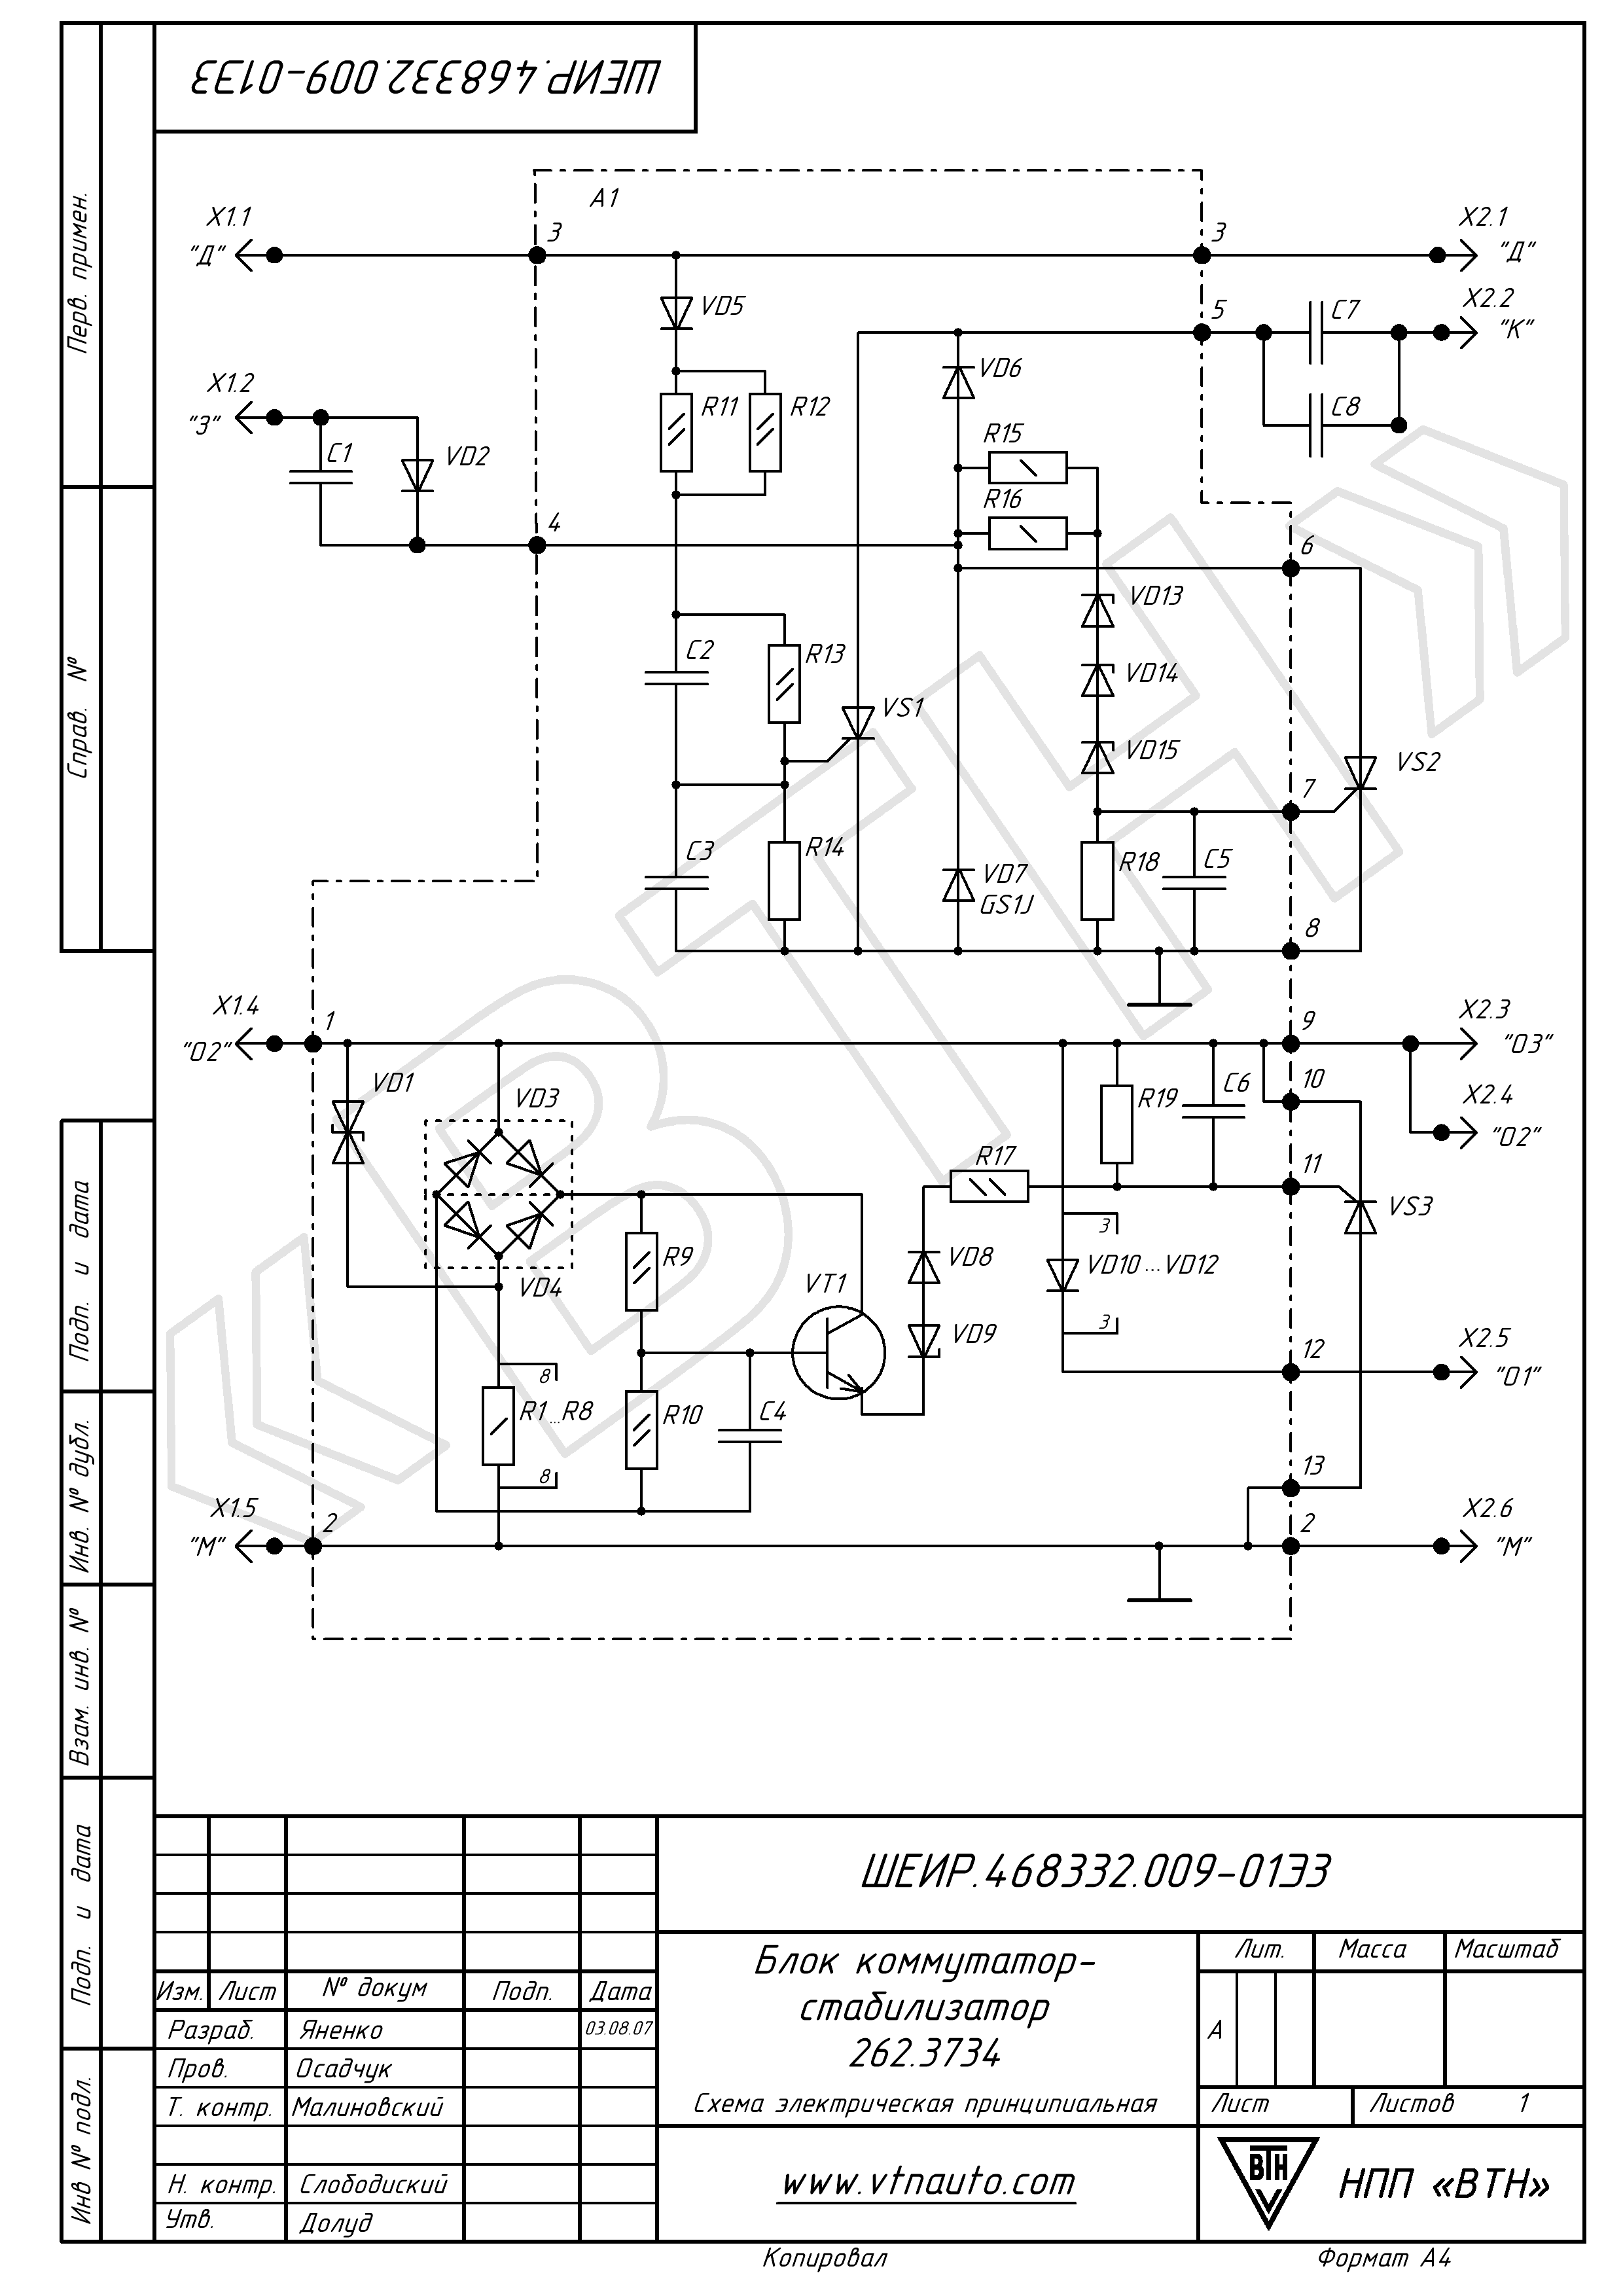 Схема электрическая принципиальная блока коммутатор-стабилизатора 262.3734